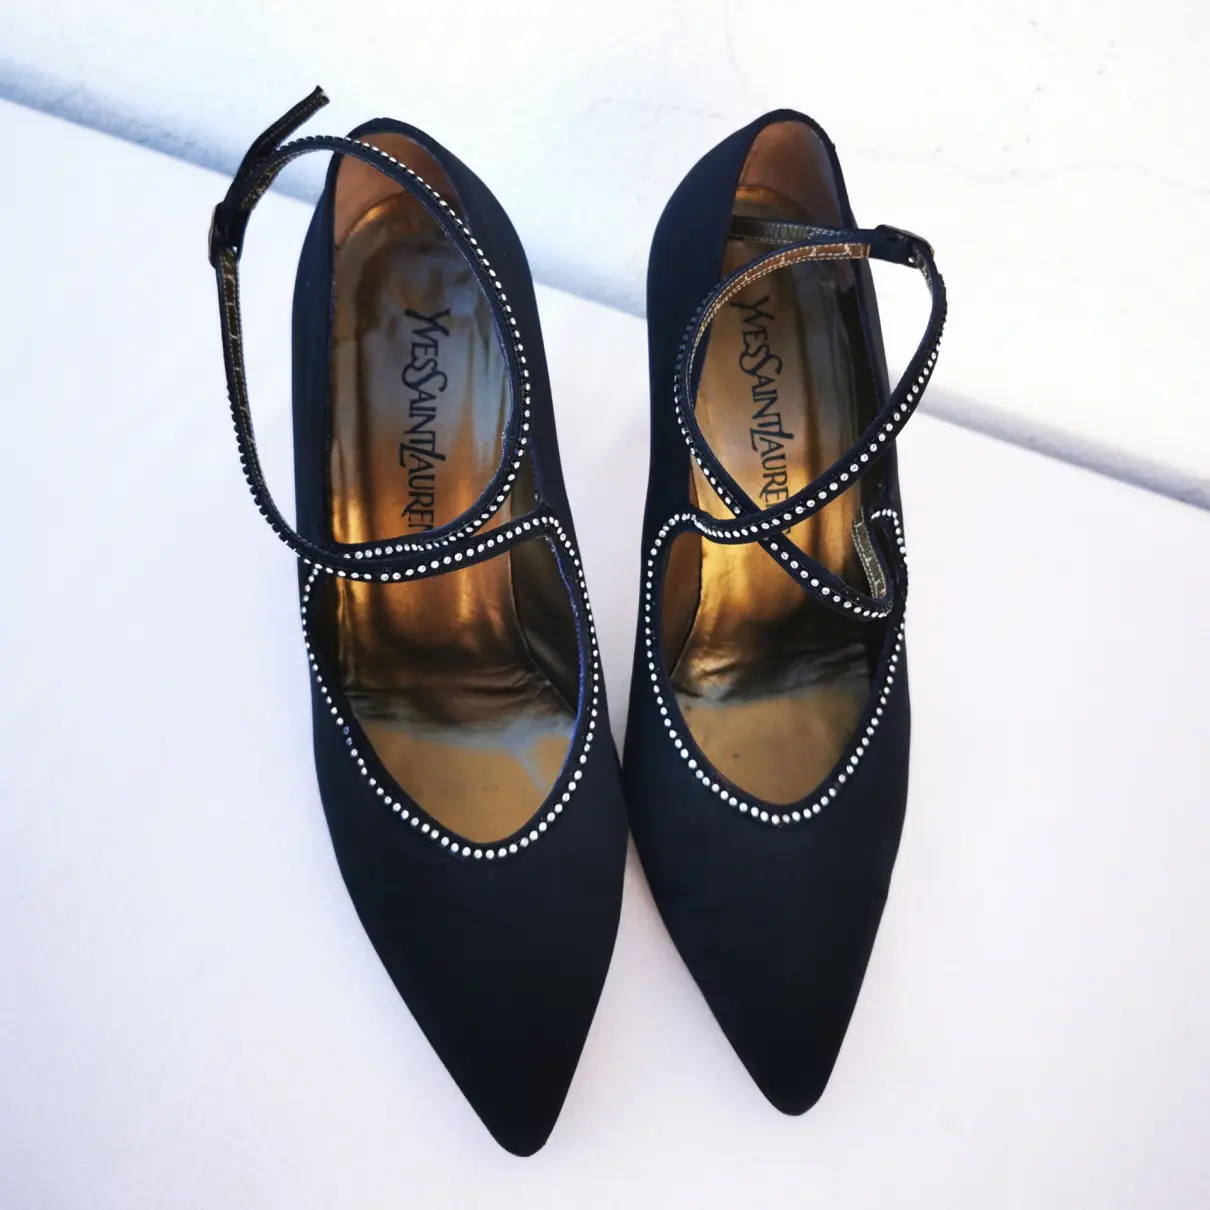 Buy Yves Saint Laurent Cloth heels online - Vintage